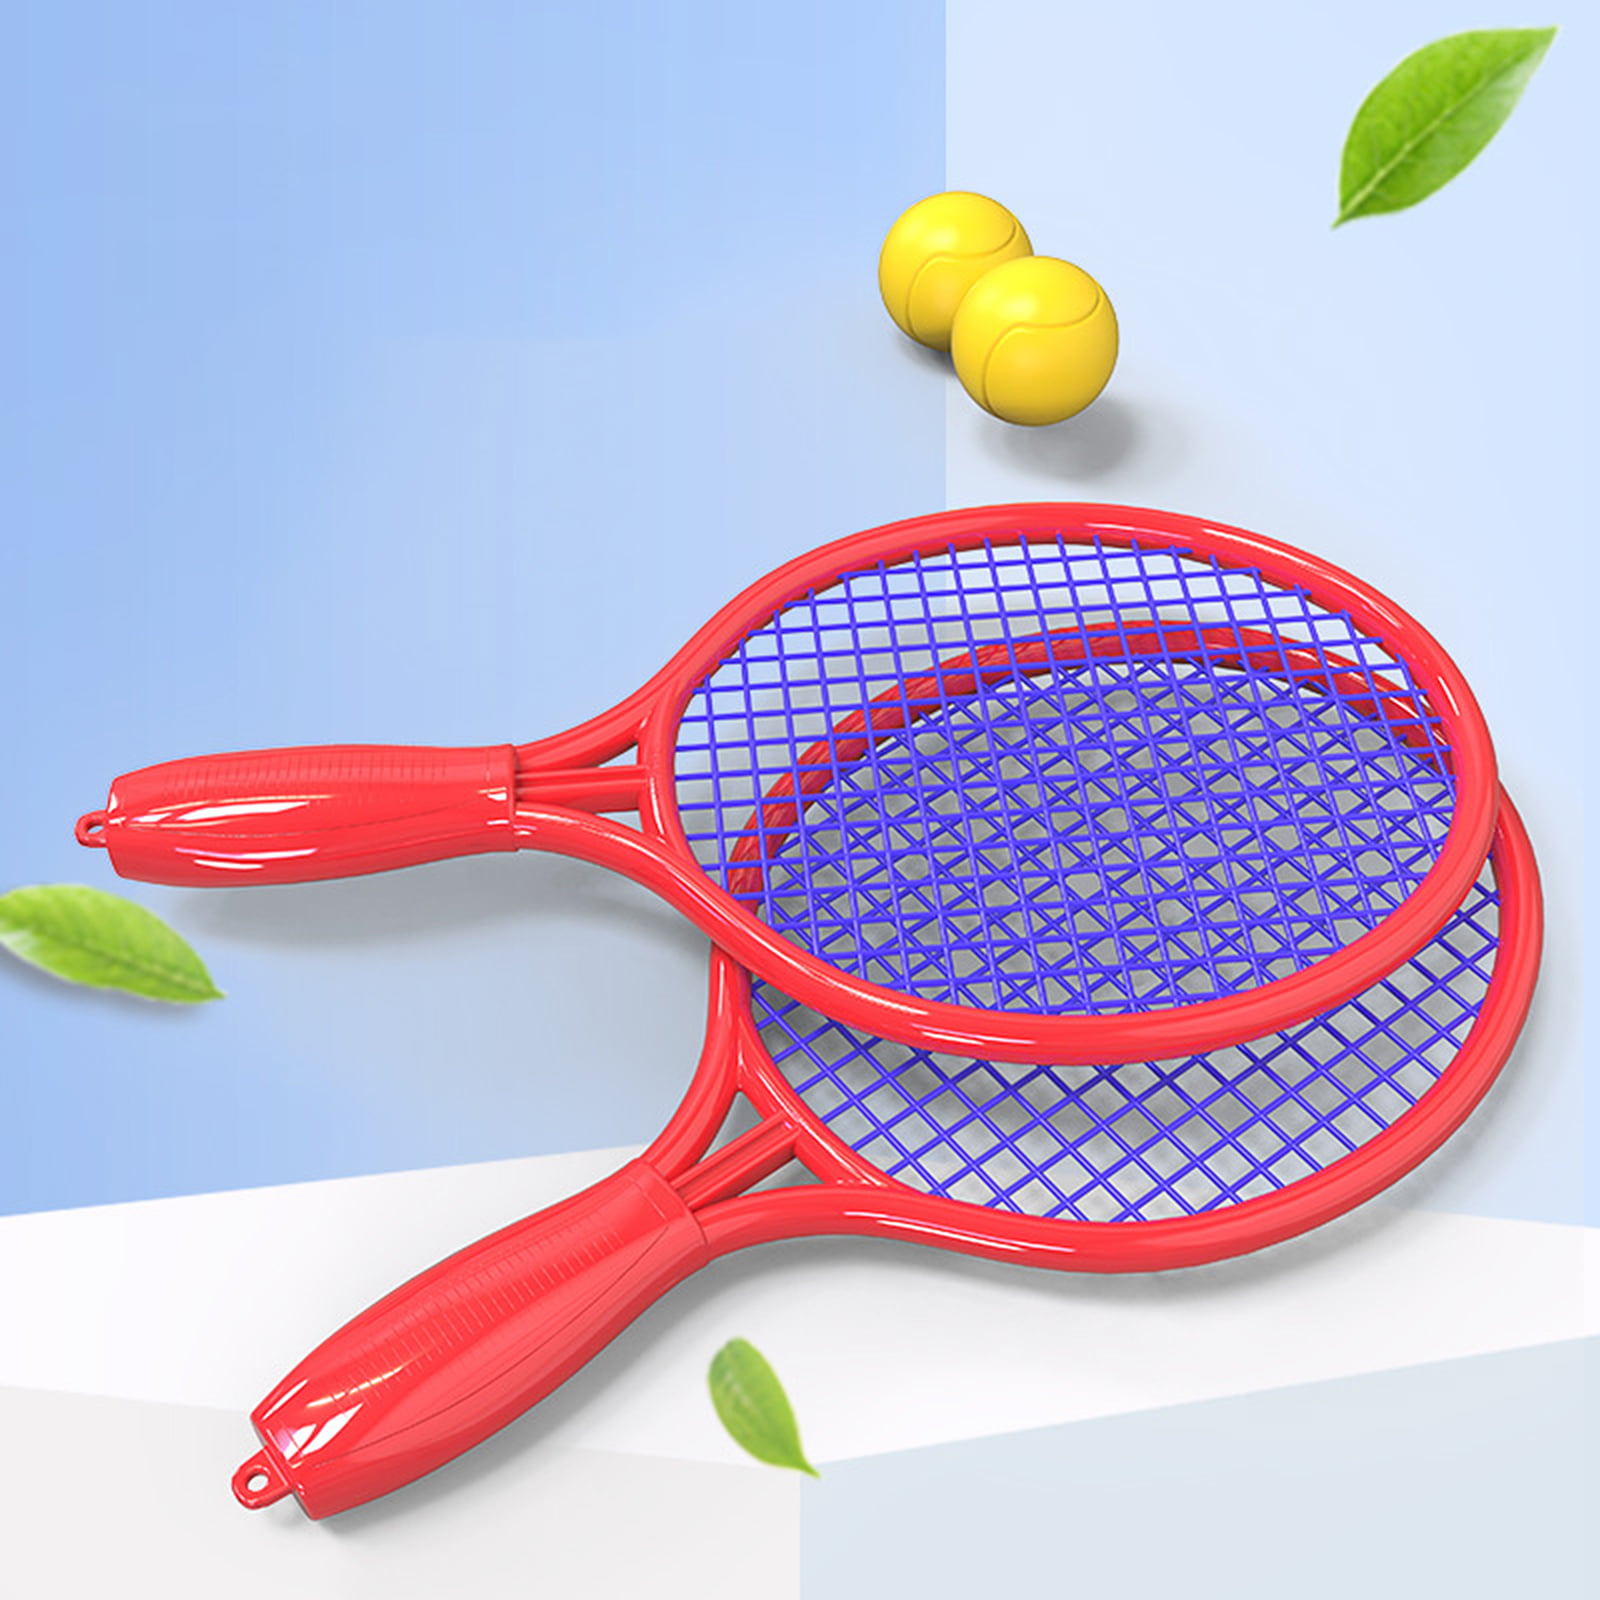 GIFT DEPOT® Badminton Set w/2 Rackets Ball & Birdie Tennis Sports Racquet Beach